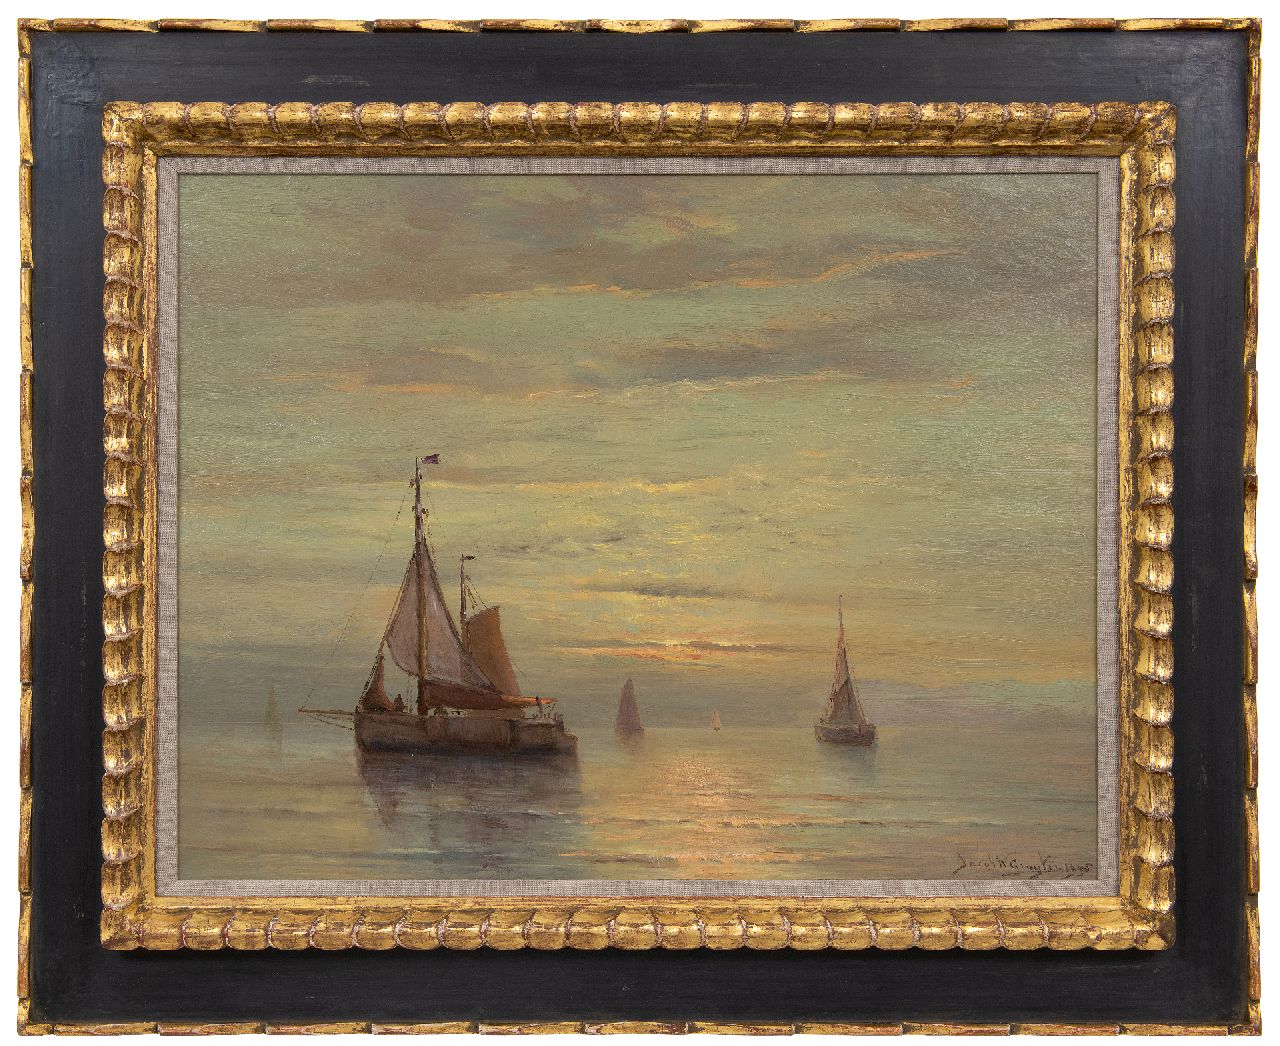 Gruijter J.W.  | Jacob Willem Gruijter | Schilderijen te koop aangeboden | Schepen op kalme zee bij zonsondergang, olieverf op paneel 50,4 x 65,0 cm, gesigneerd rechtsonder en gedateerd 1905